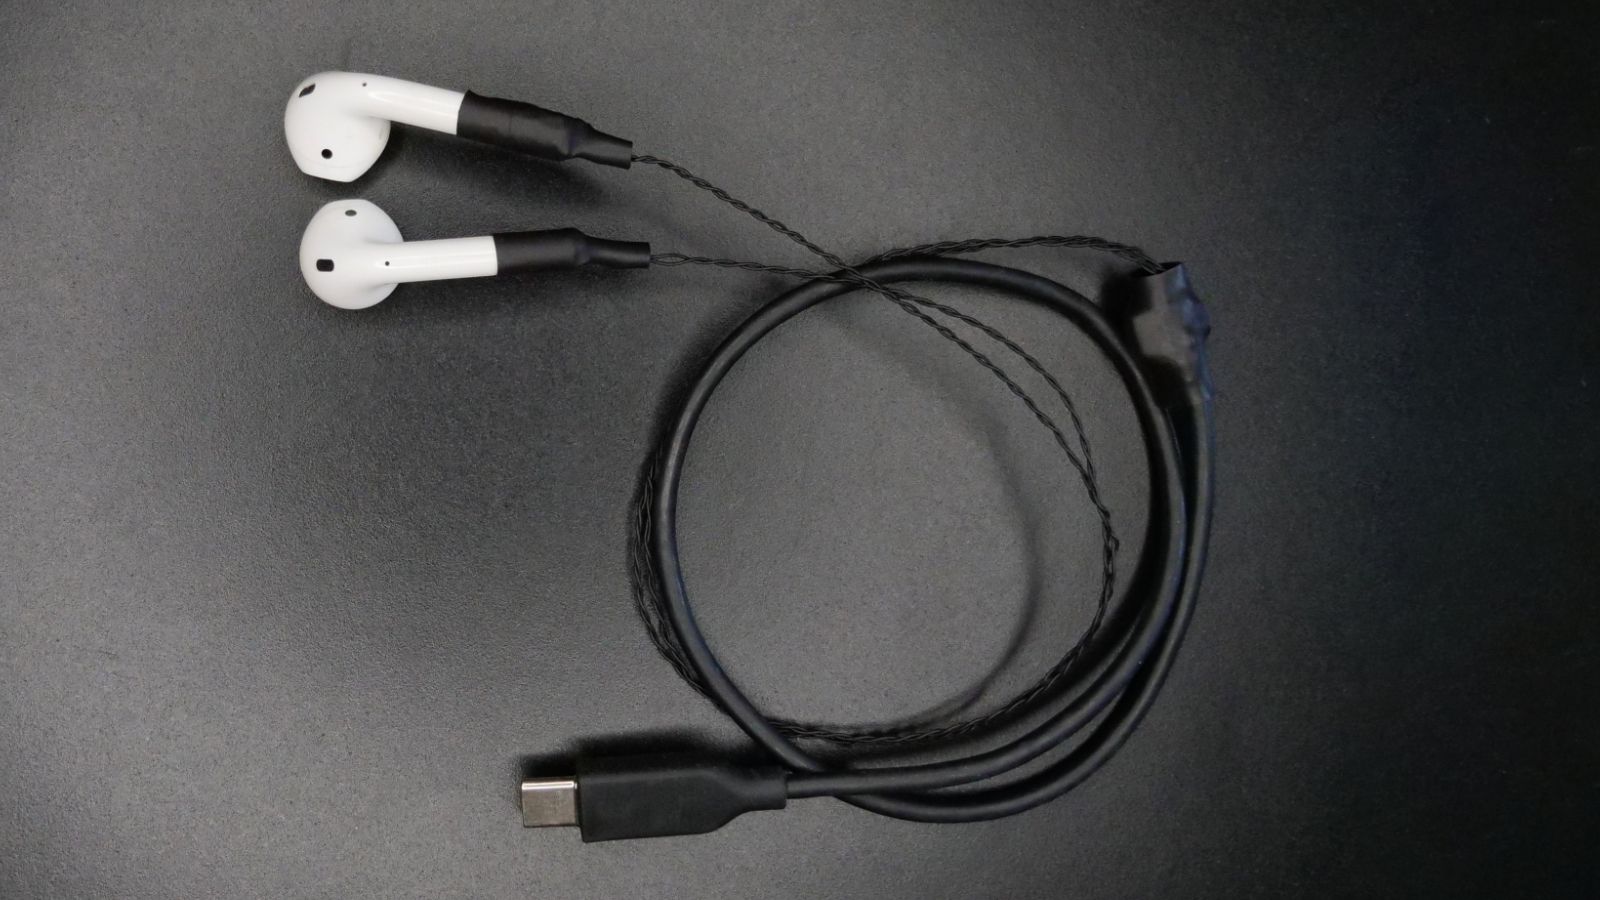 工程師成功為AirPods帶來線纜和USB-C接頭 | AirPods | iPhone News 愛瘋了